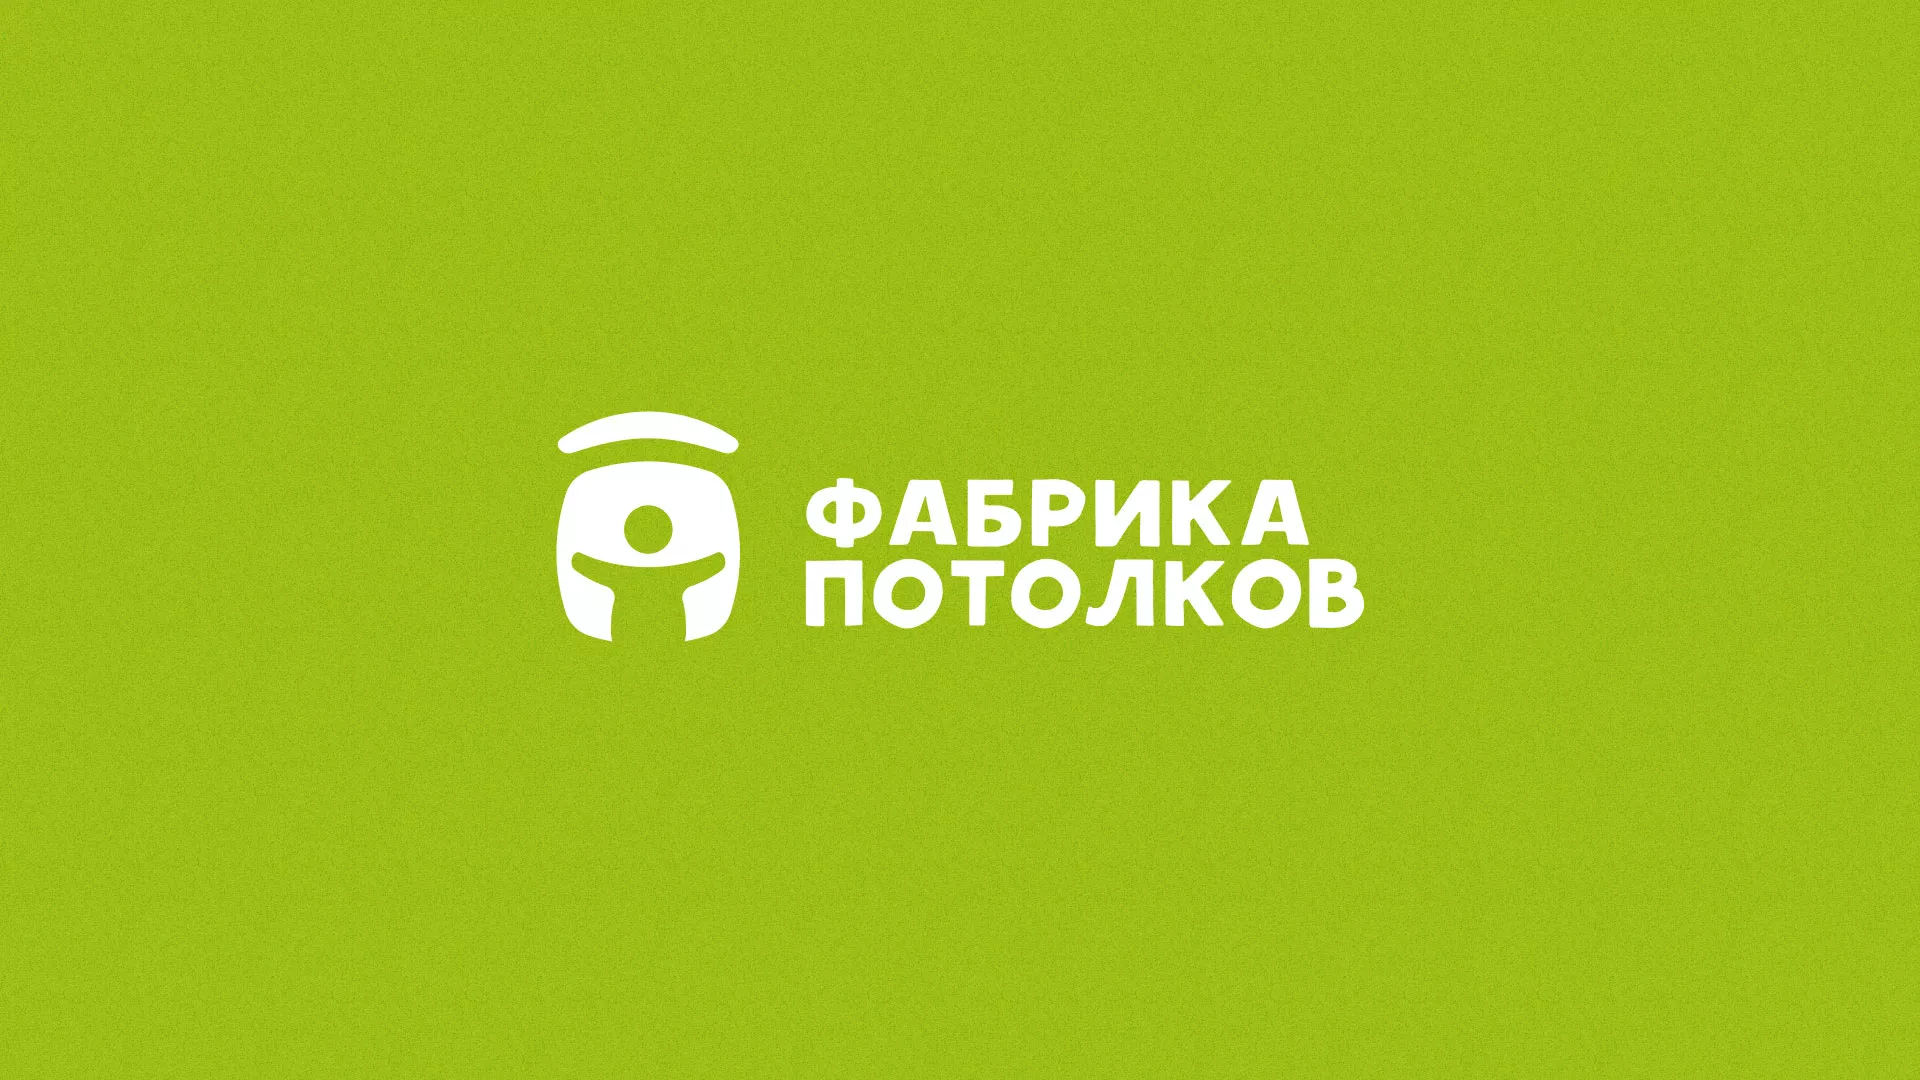 Разработка логотипа для производства натяжных потолков в Сердобске